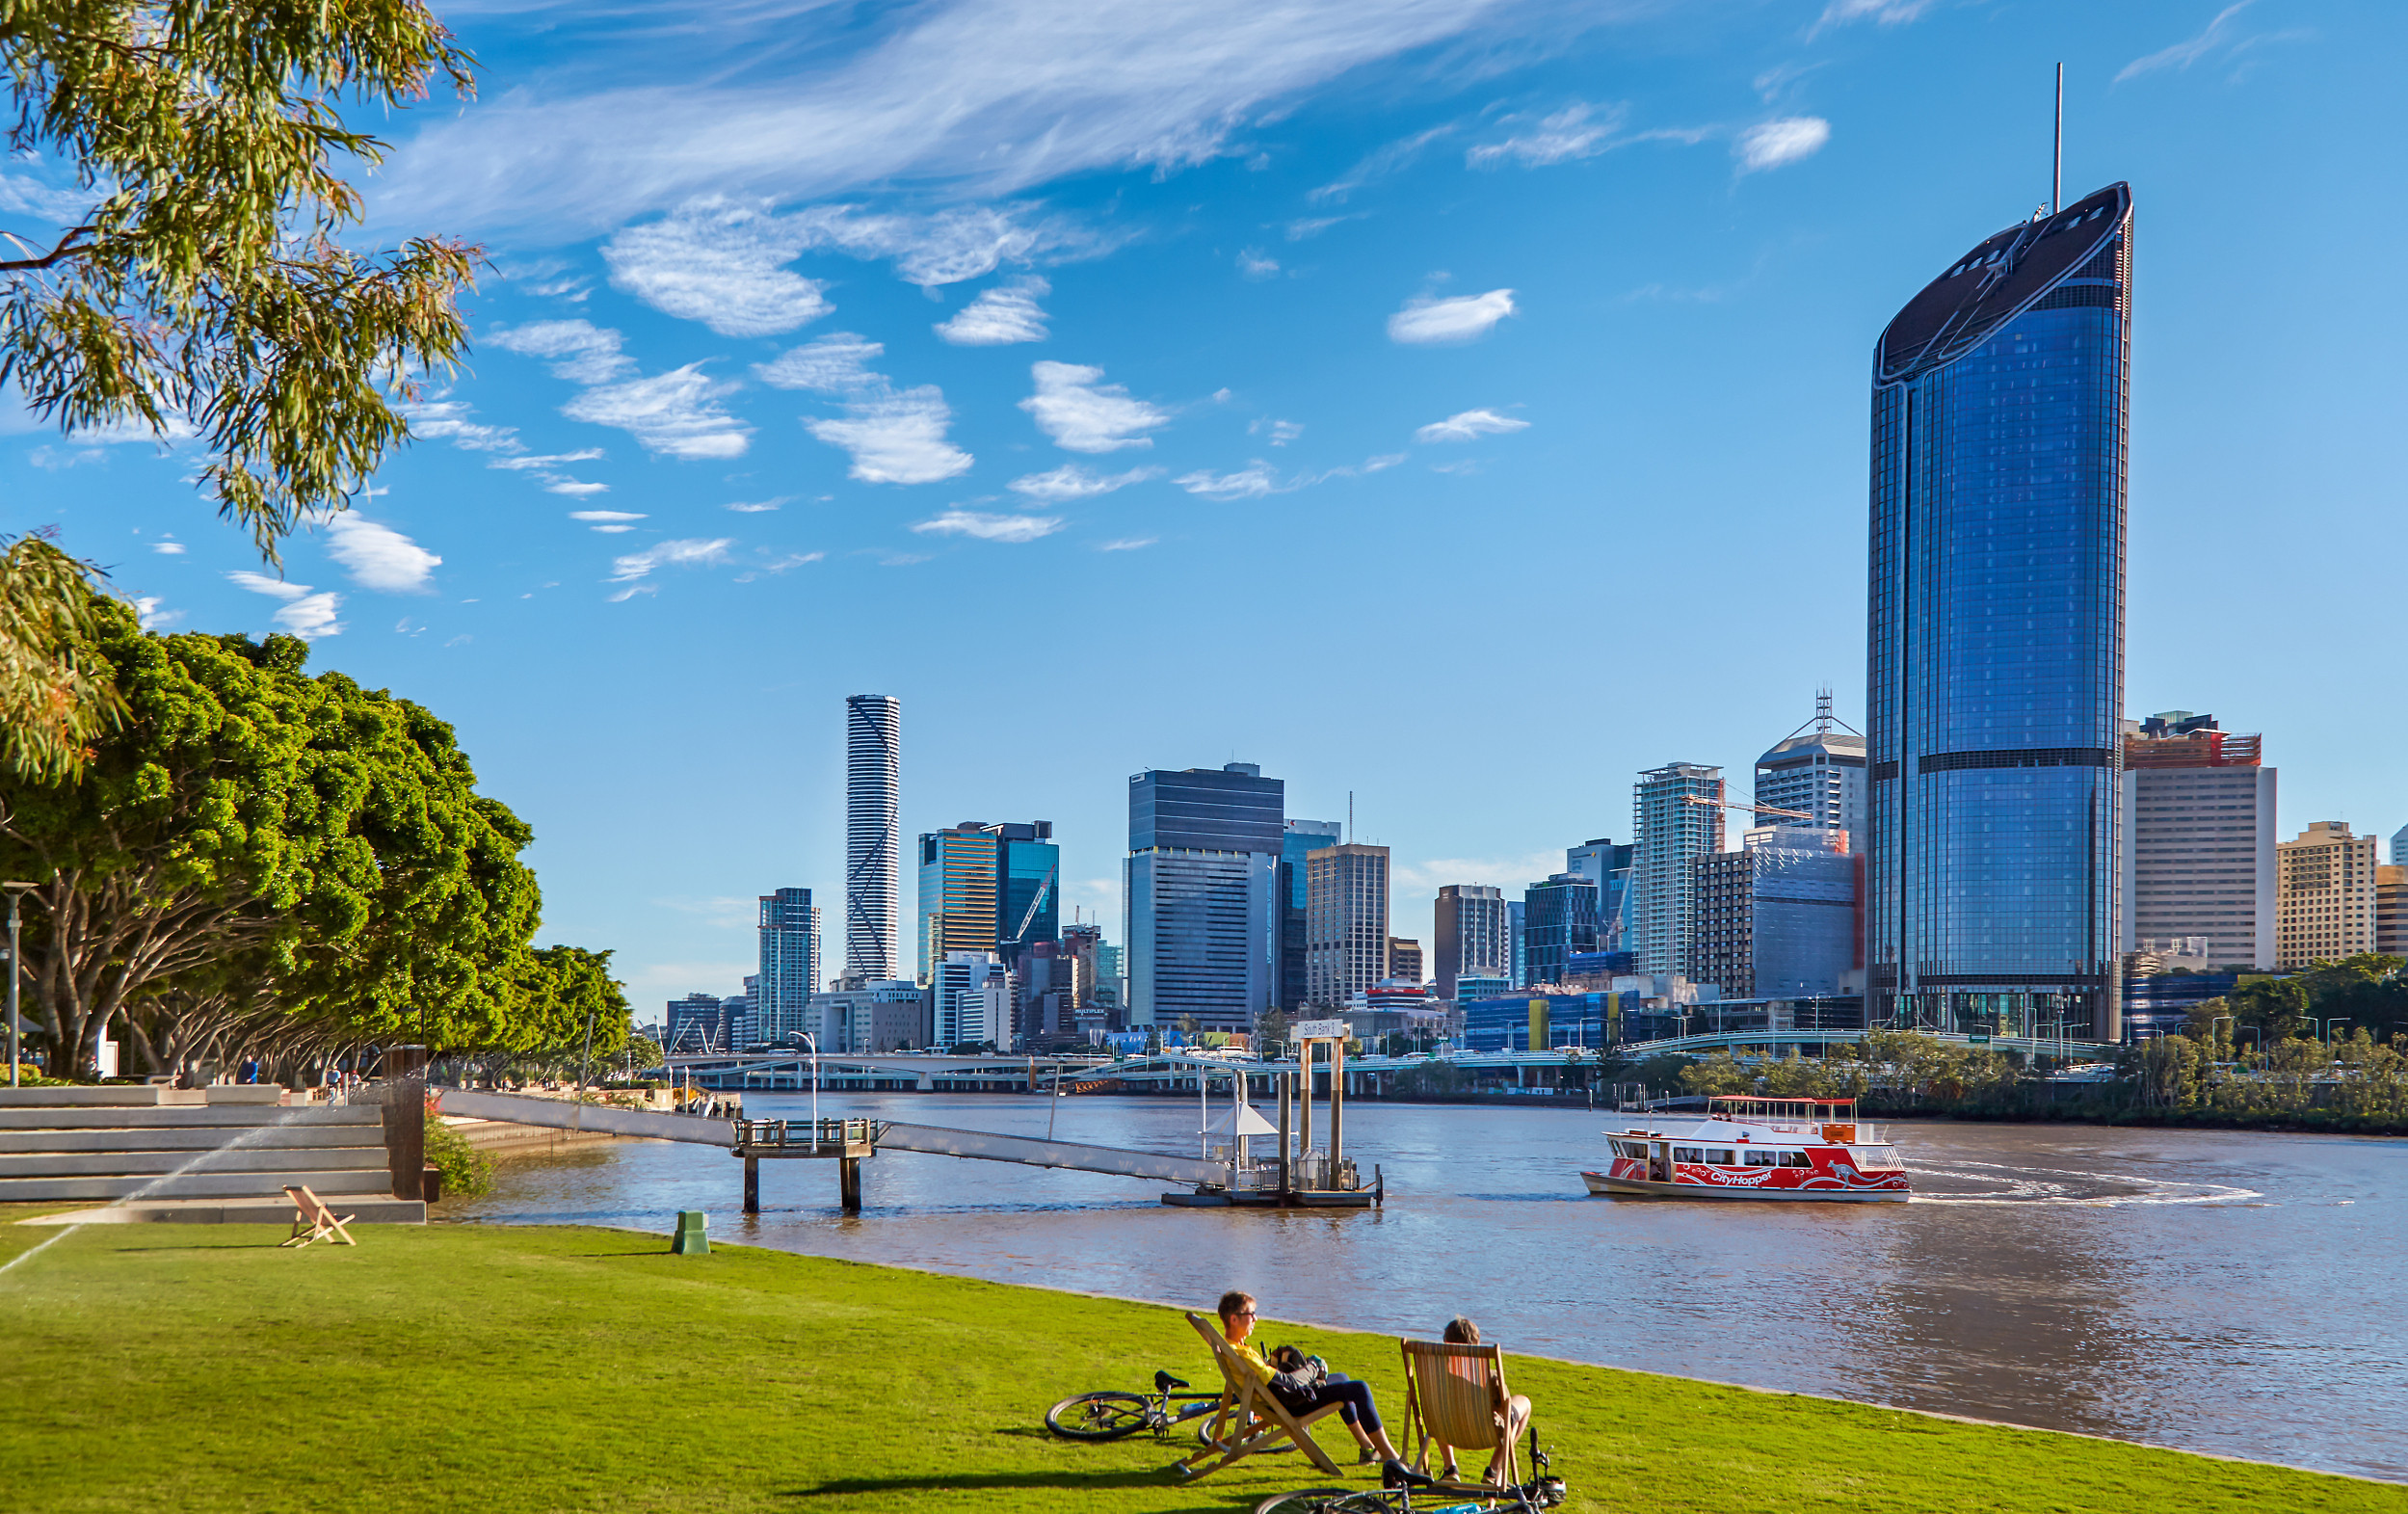 澳大利亚昆士兰州布里斯班市 图源:视觉中国